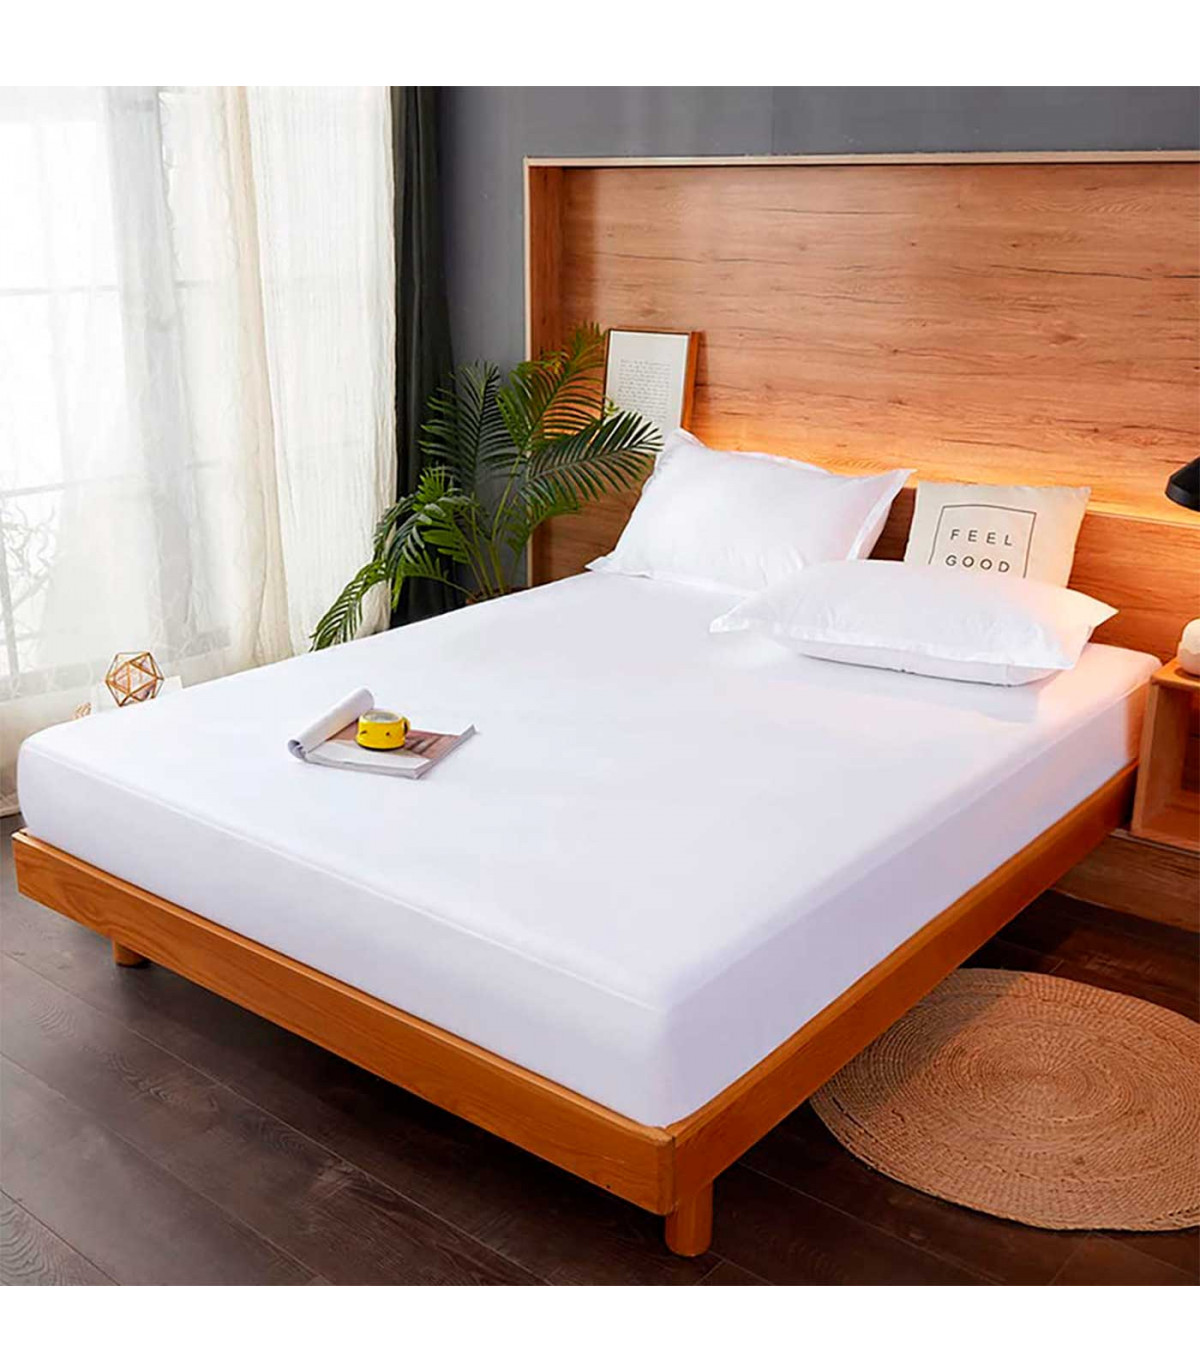 Tradineur - Sábana bajera ajustable de algodón para cama de 135